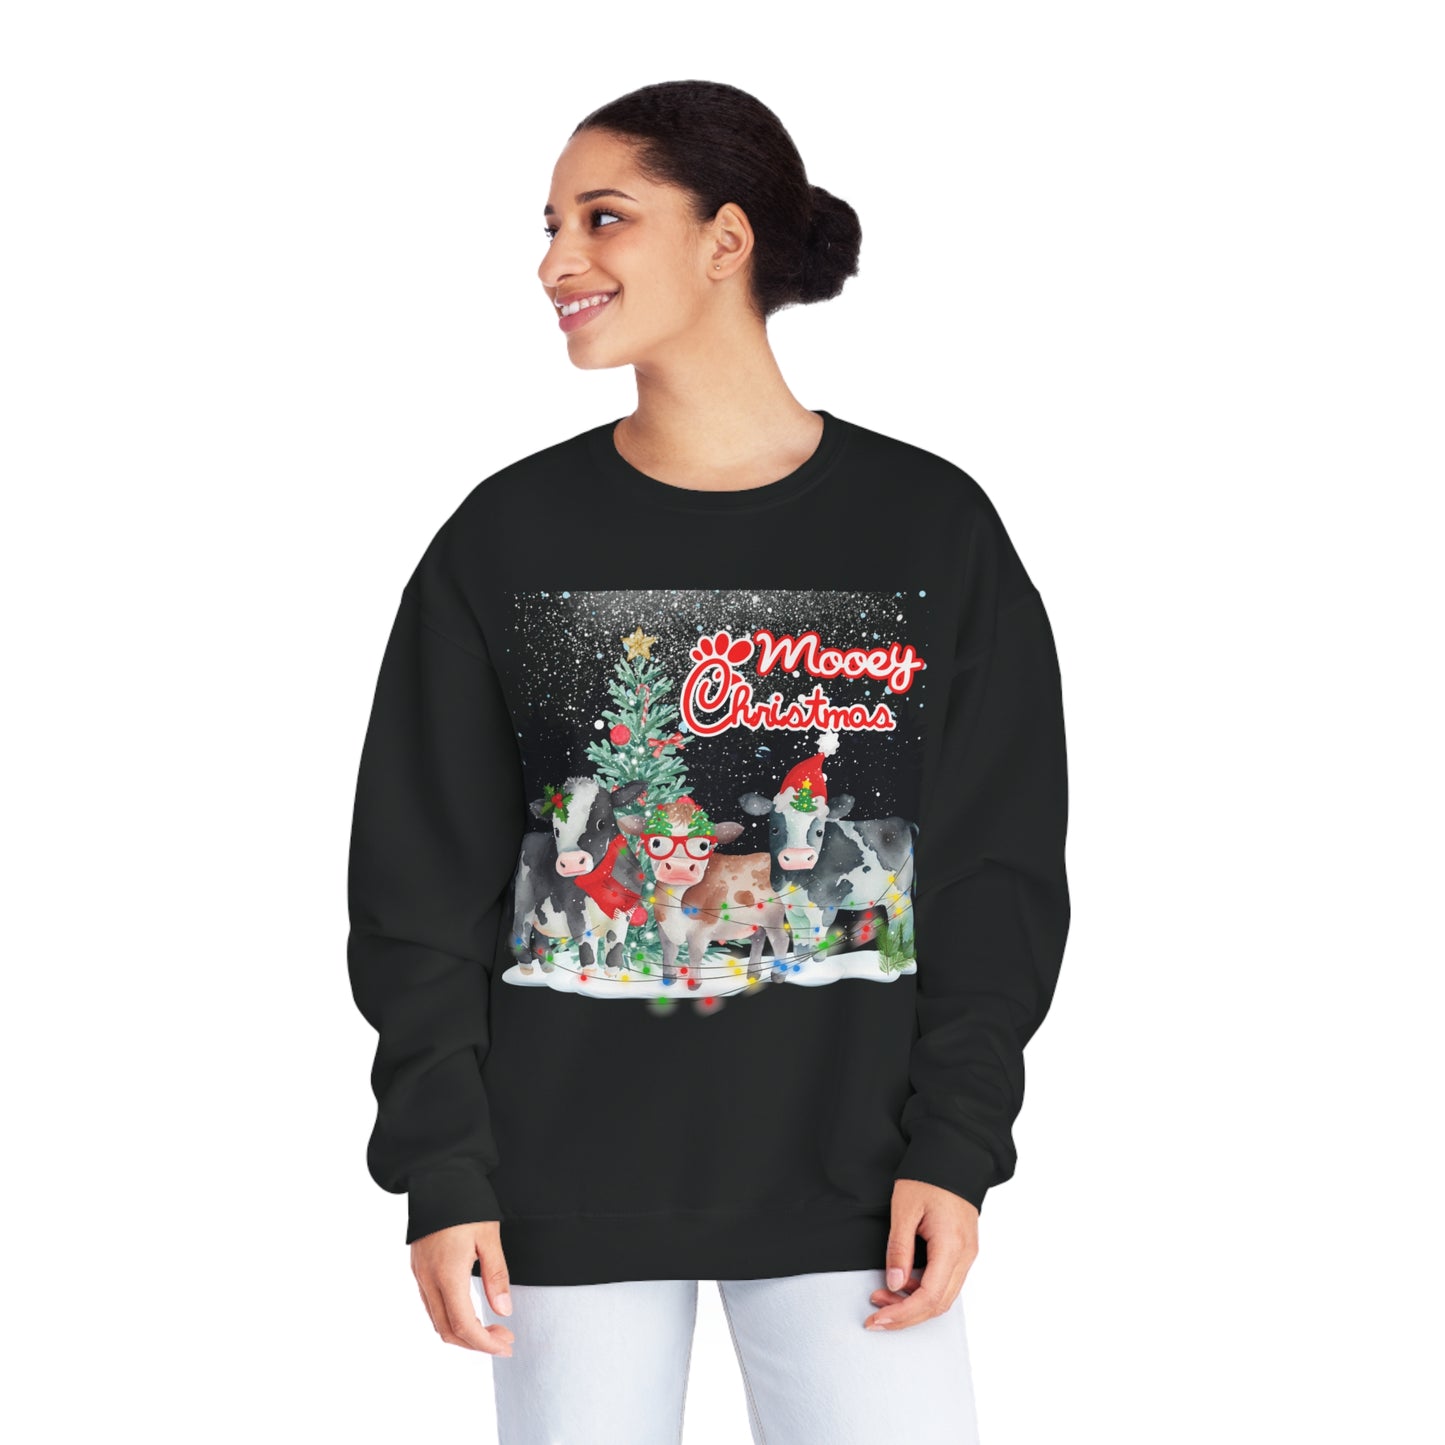 Mooey Christmas Chickfila Crewneck Sweatshirt